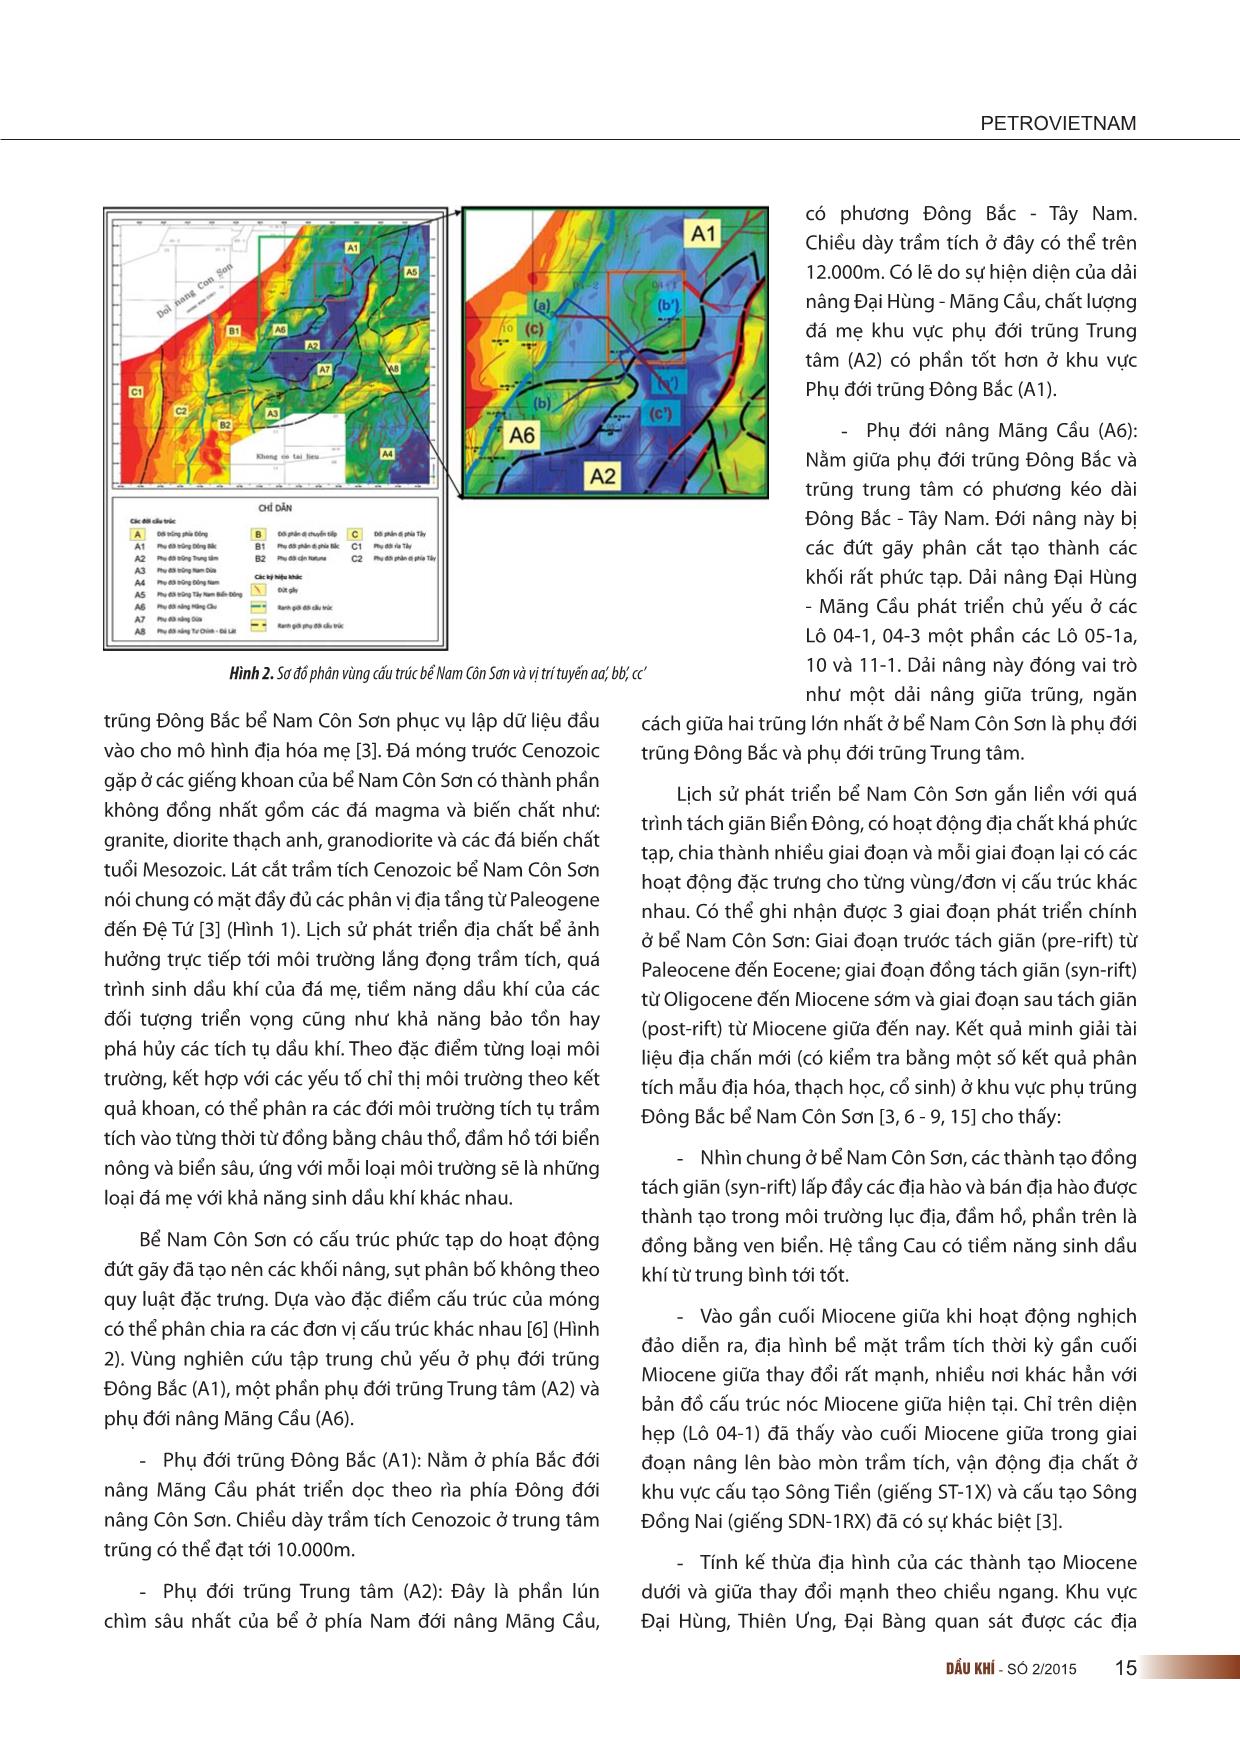 Quá trình sinh dầu khí của đá mẹ khu vực phụ đới trũng Đông Bắc và phụ đới trũng trung tâm bể Nam Côn Sơn trang 2